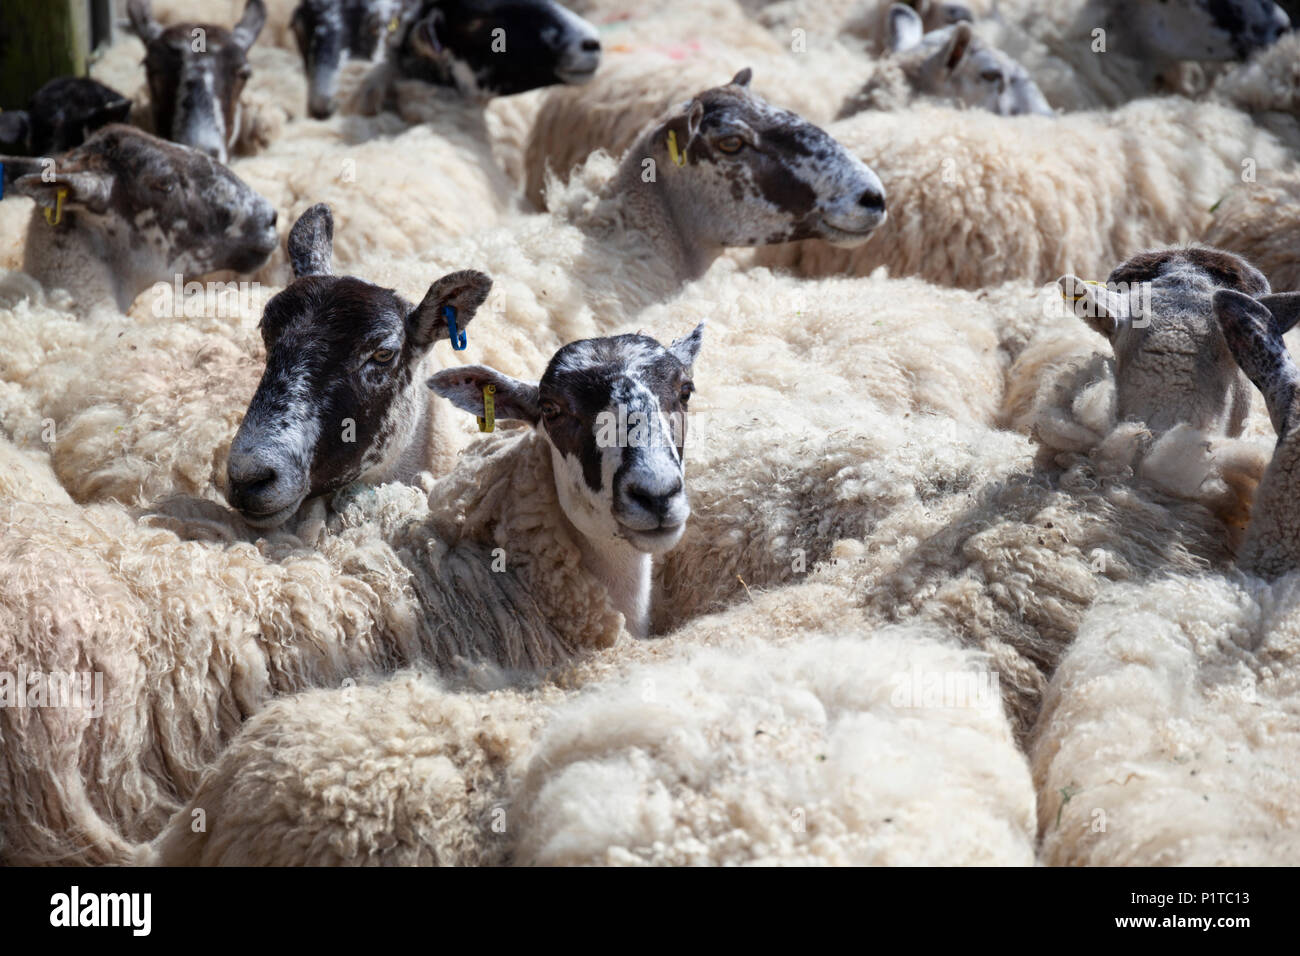 Troupeau de moutons dans les pays du Nord autour de la Mule en attente d'être cisaillé, Stow-on-the-Wold, Cotswolds, Gloucestershire, Angleterre, Royaume-Uni, Europe Banque D'Images